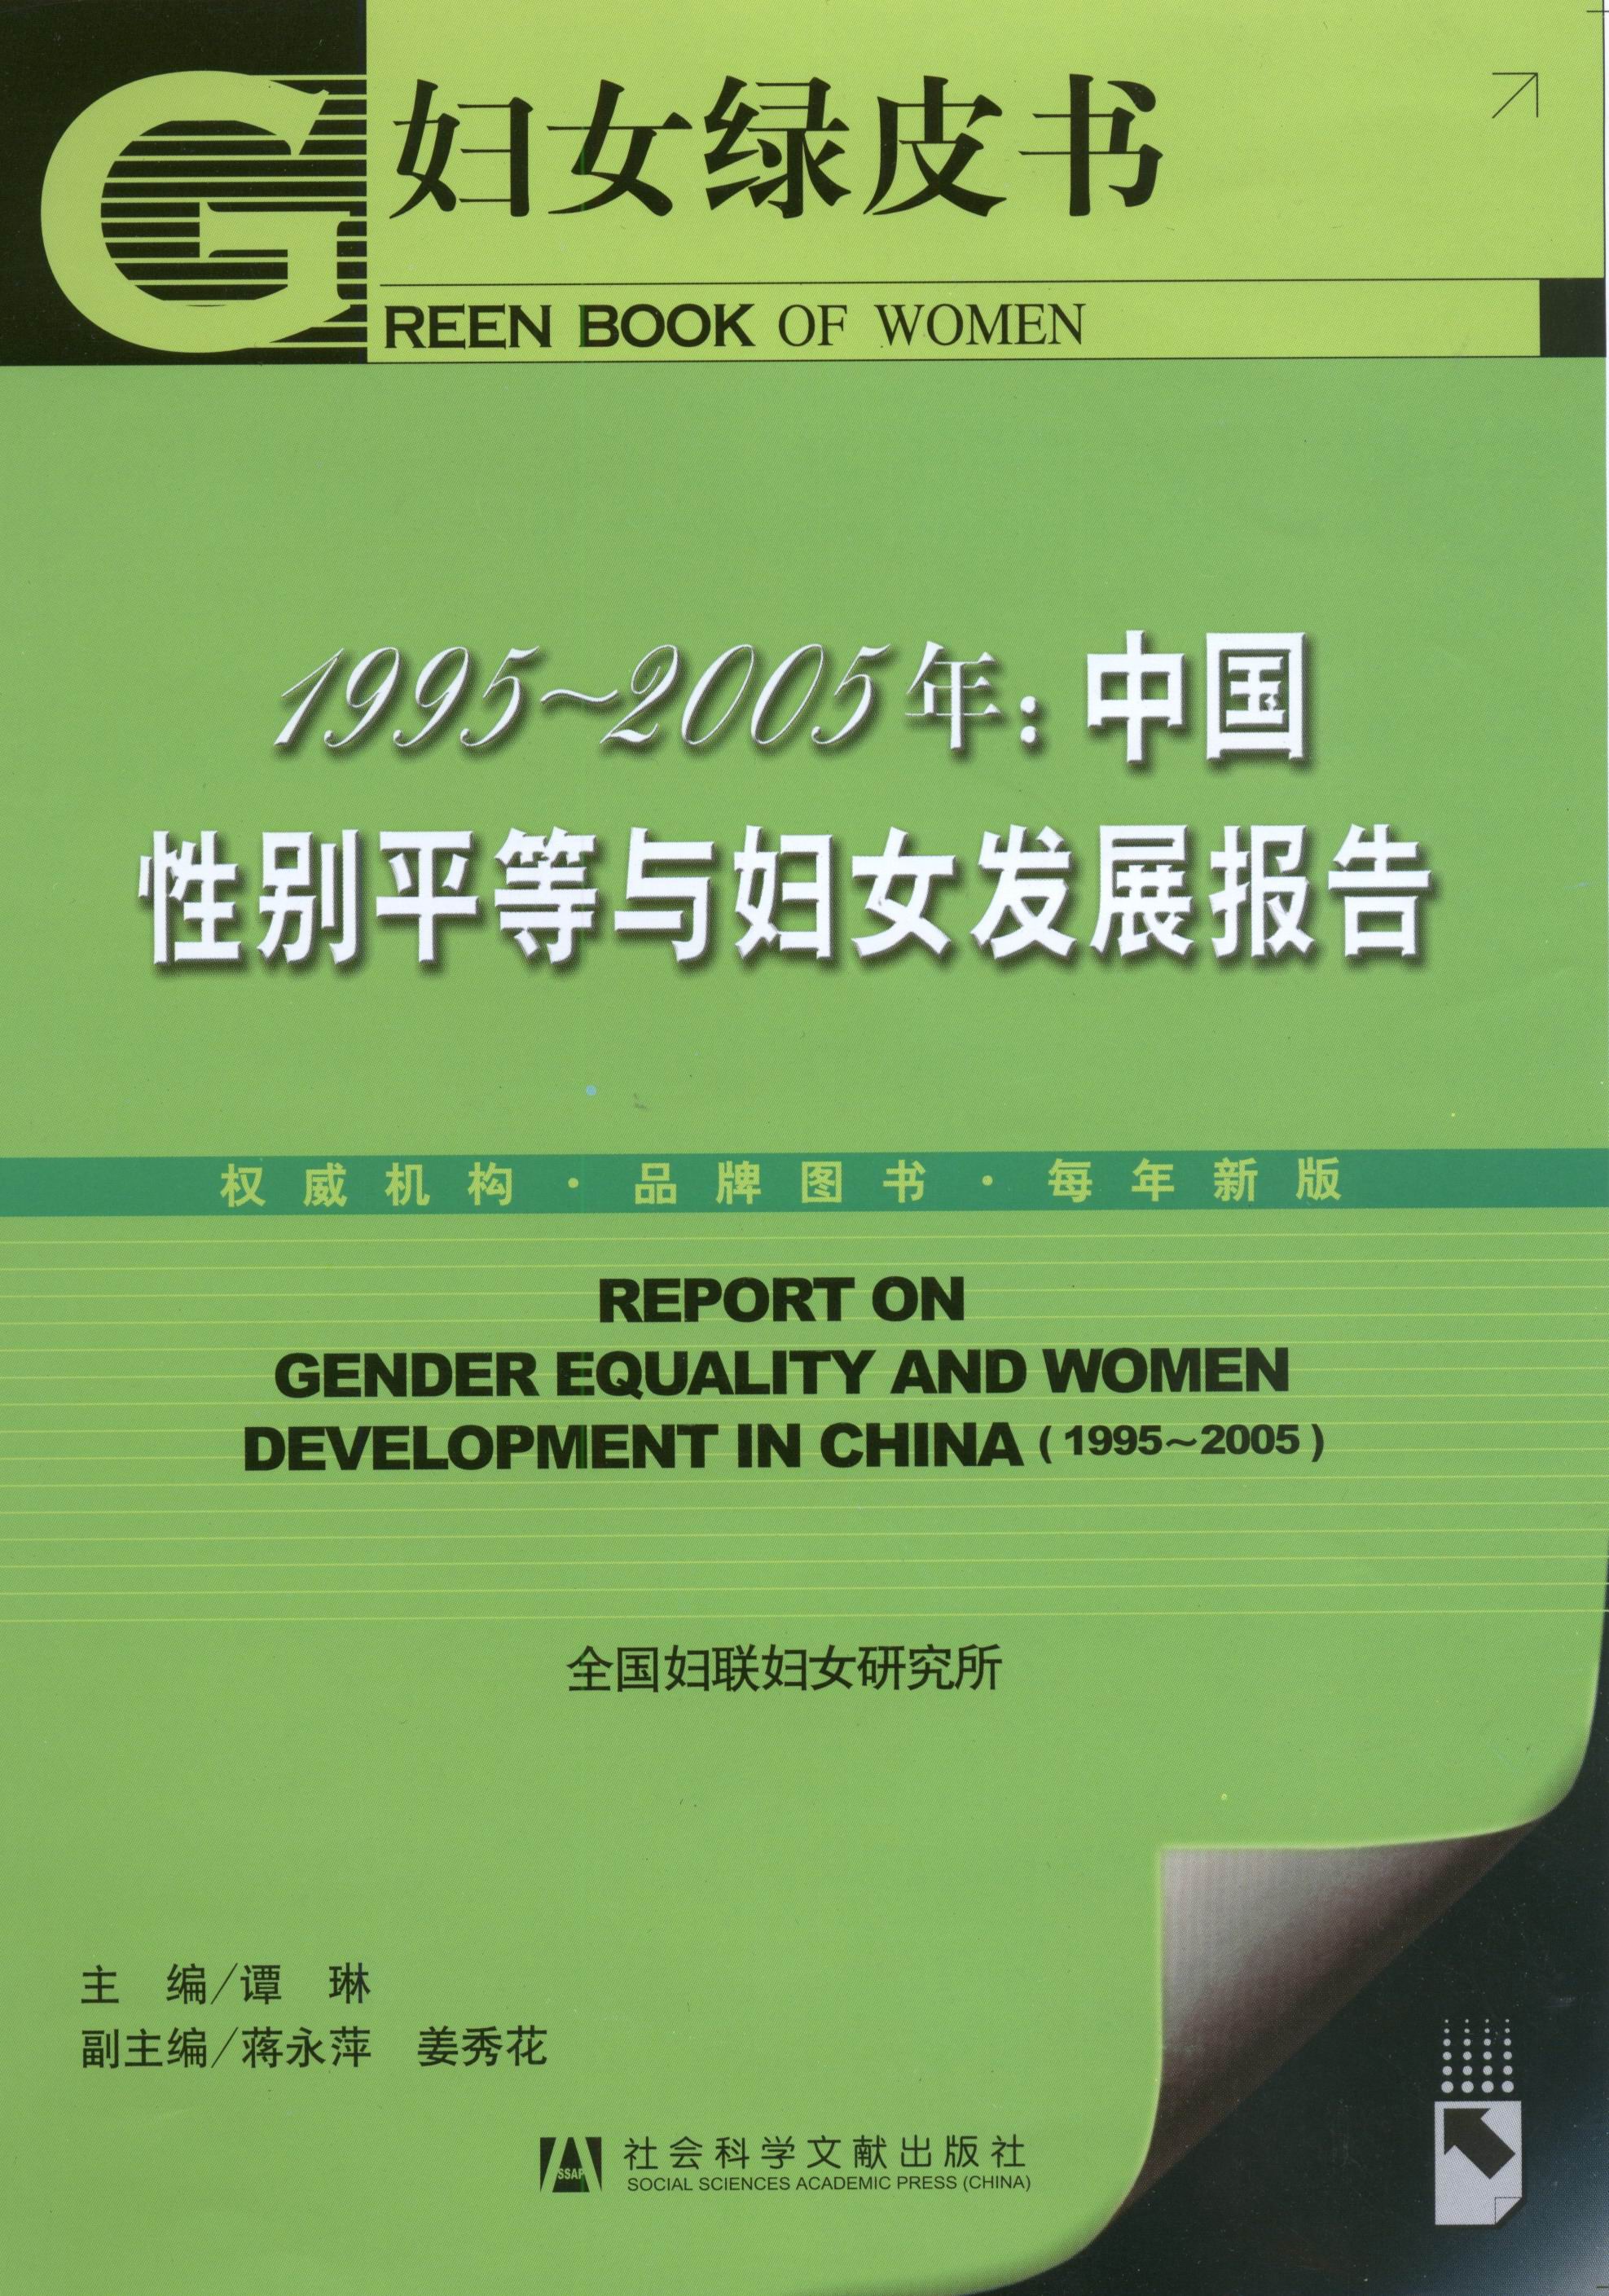 1995-2005中国性别平等与妇女发展报告